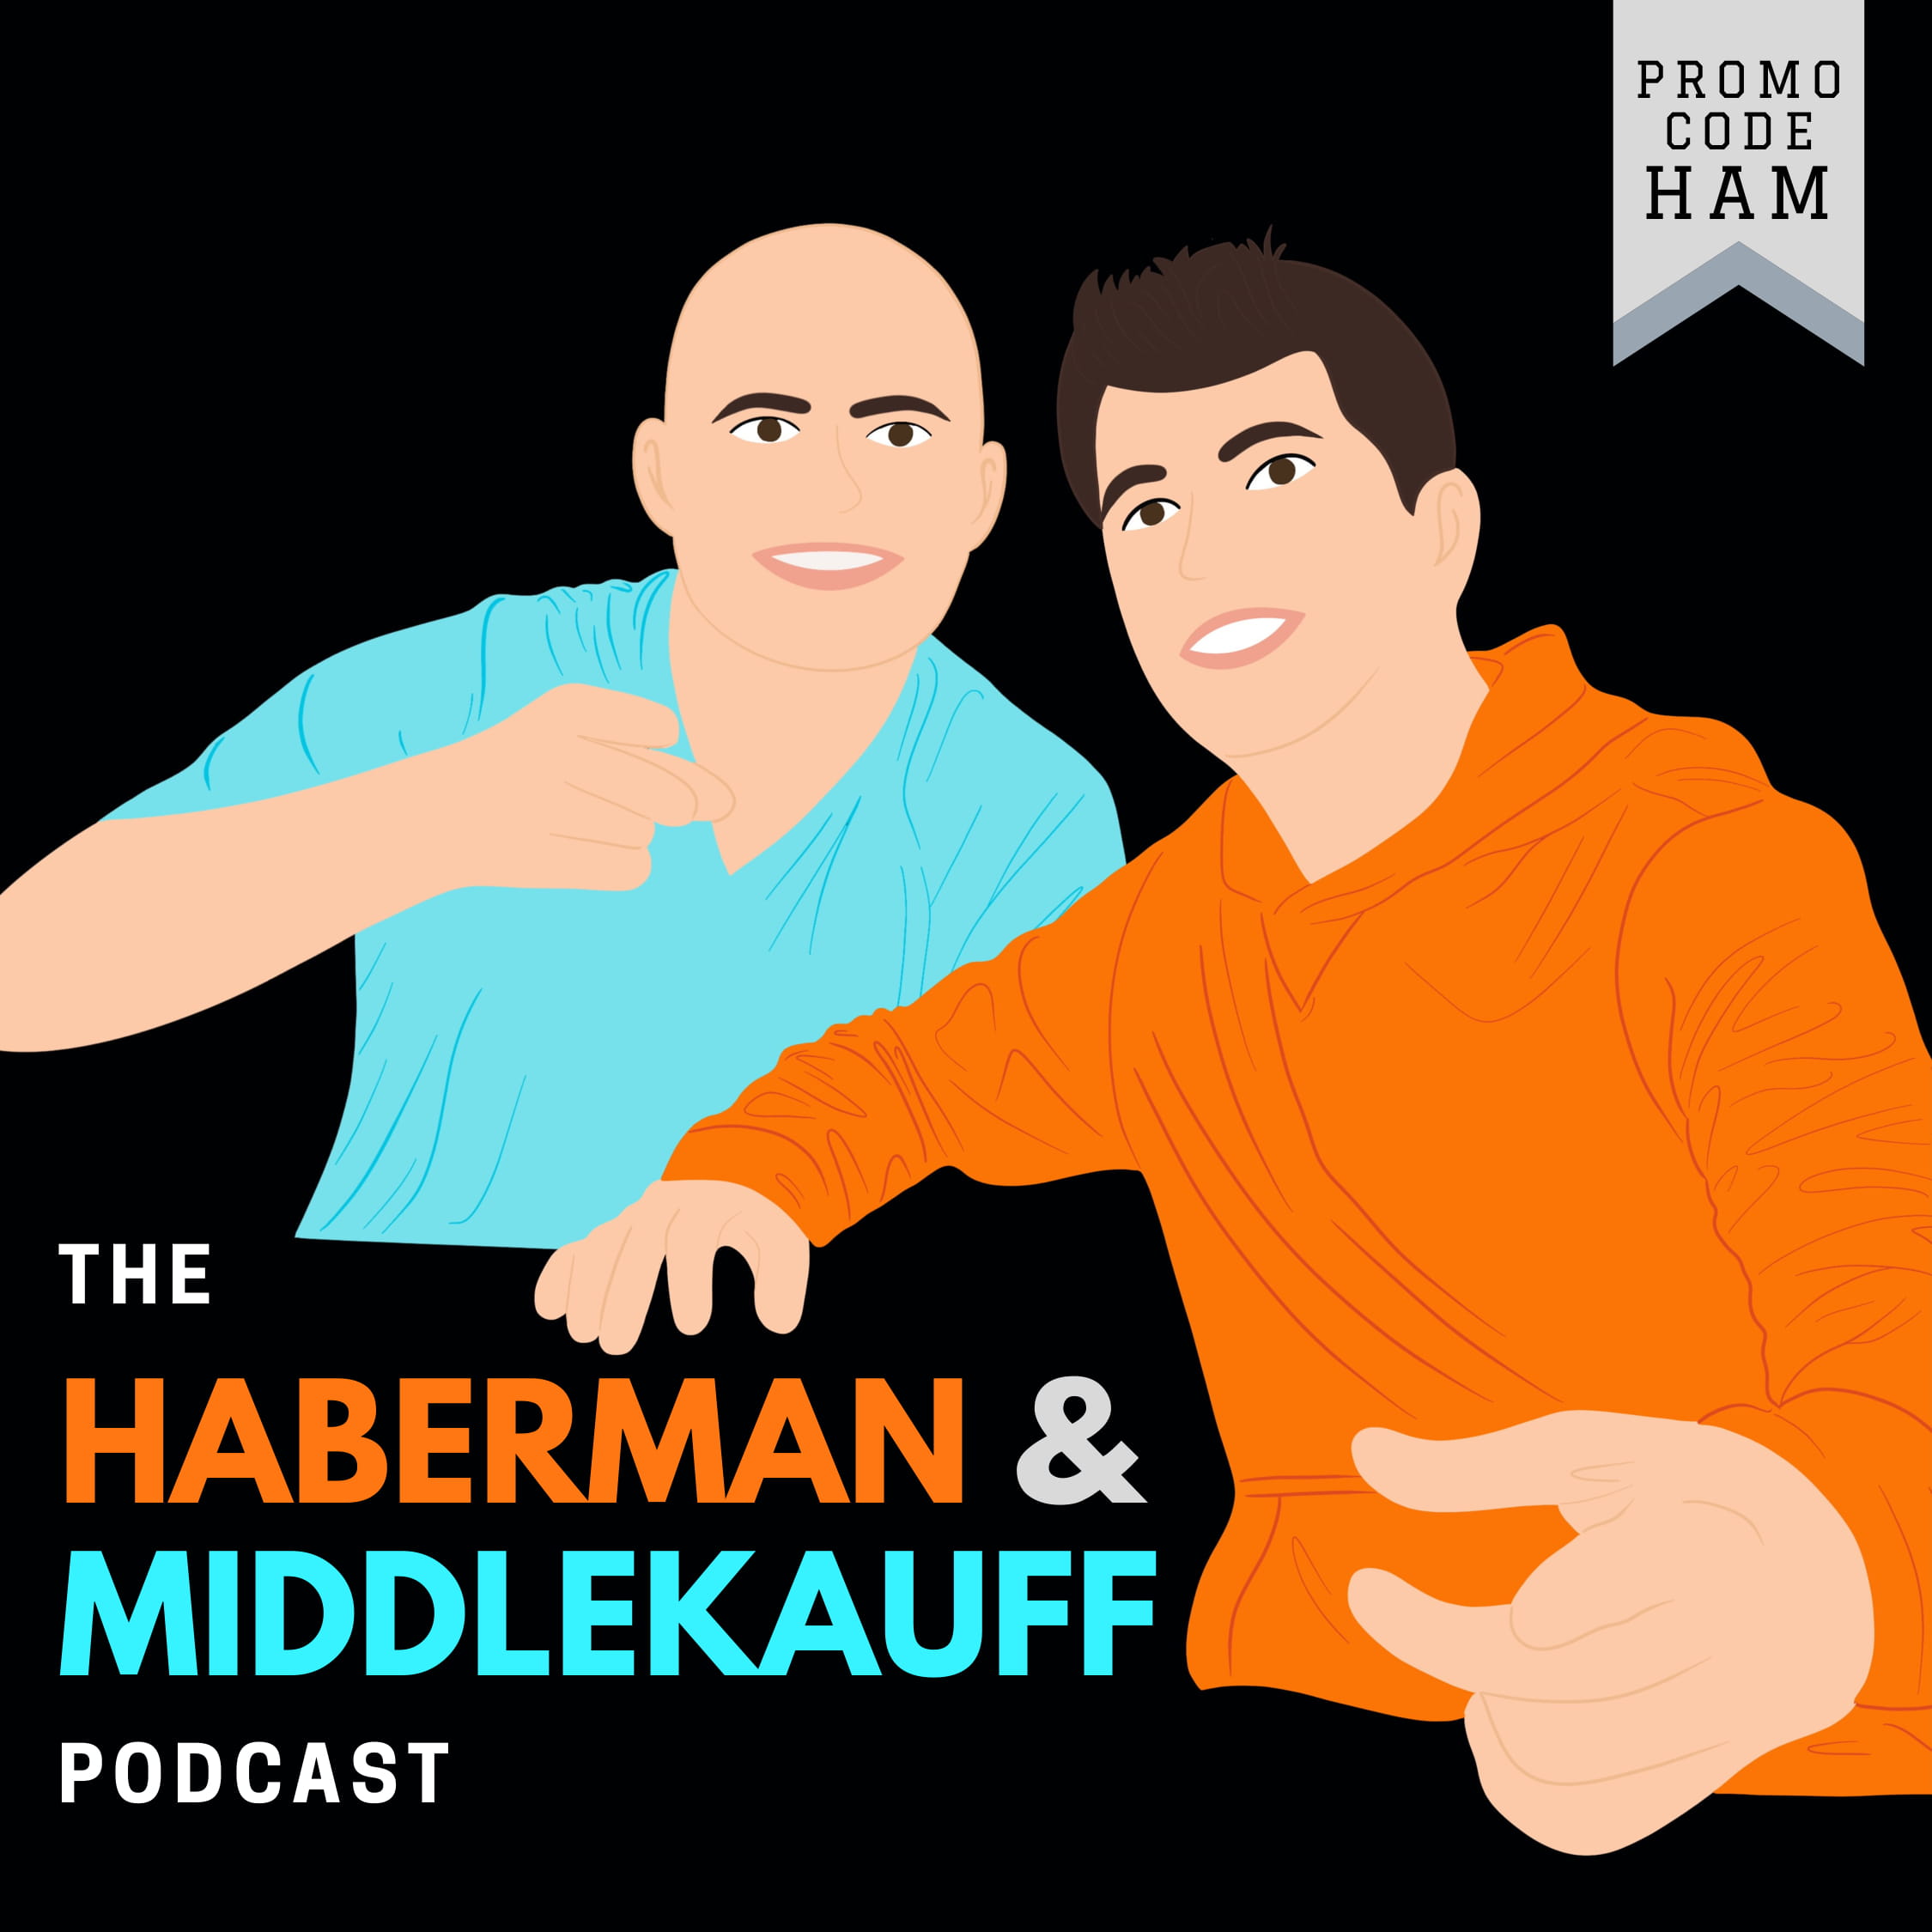 Joe Montana Doesn't Pick Sides - Haberman & Middlekauff Segment